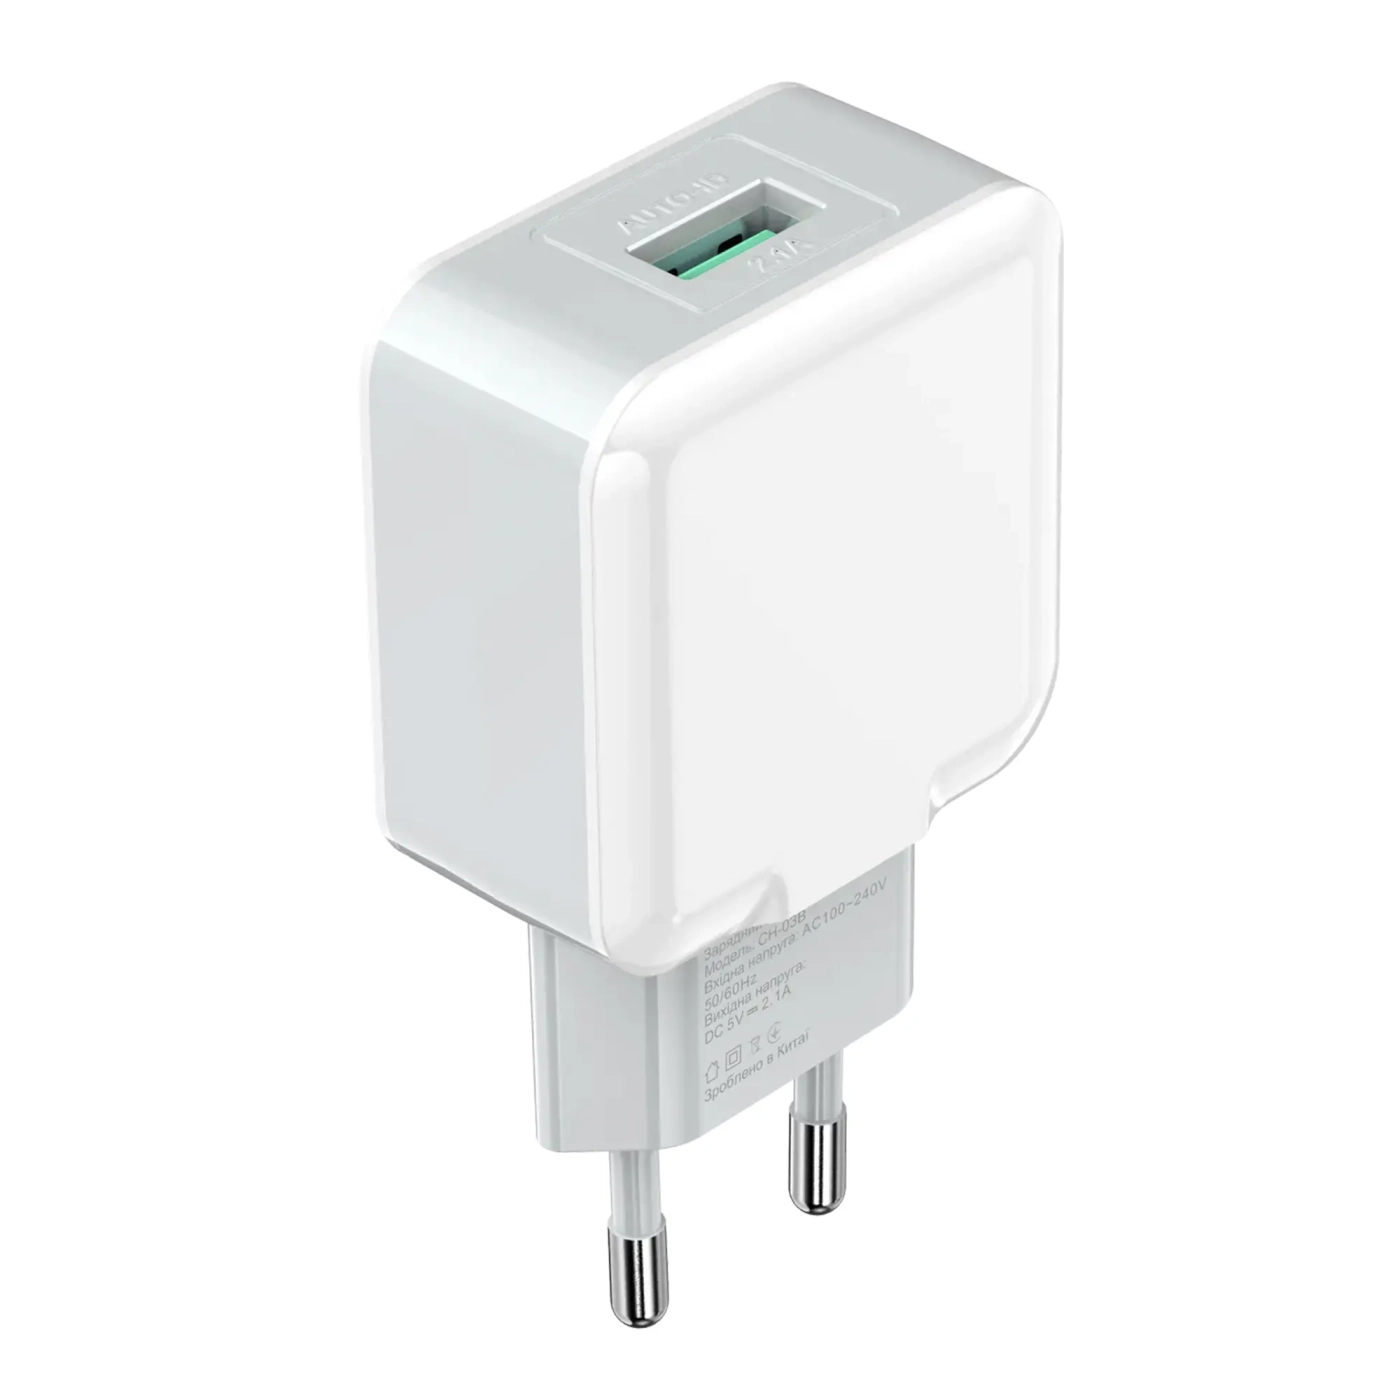 Купить Зарядное устройство Grand-X USB 5V 2,1A White с защитой от перегрузок (CH-03W) - фото 1